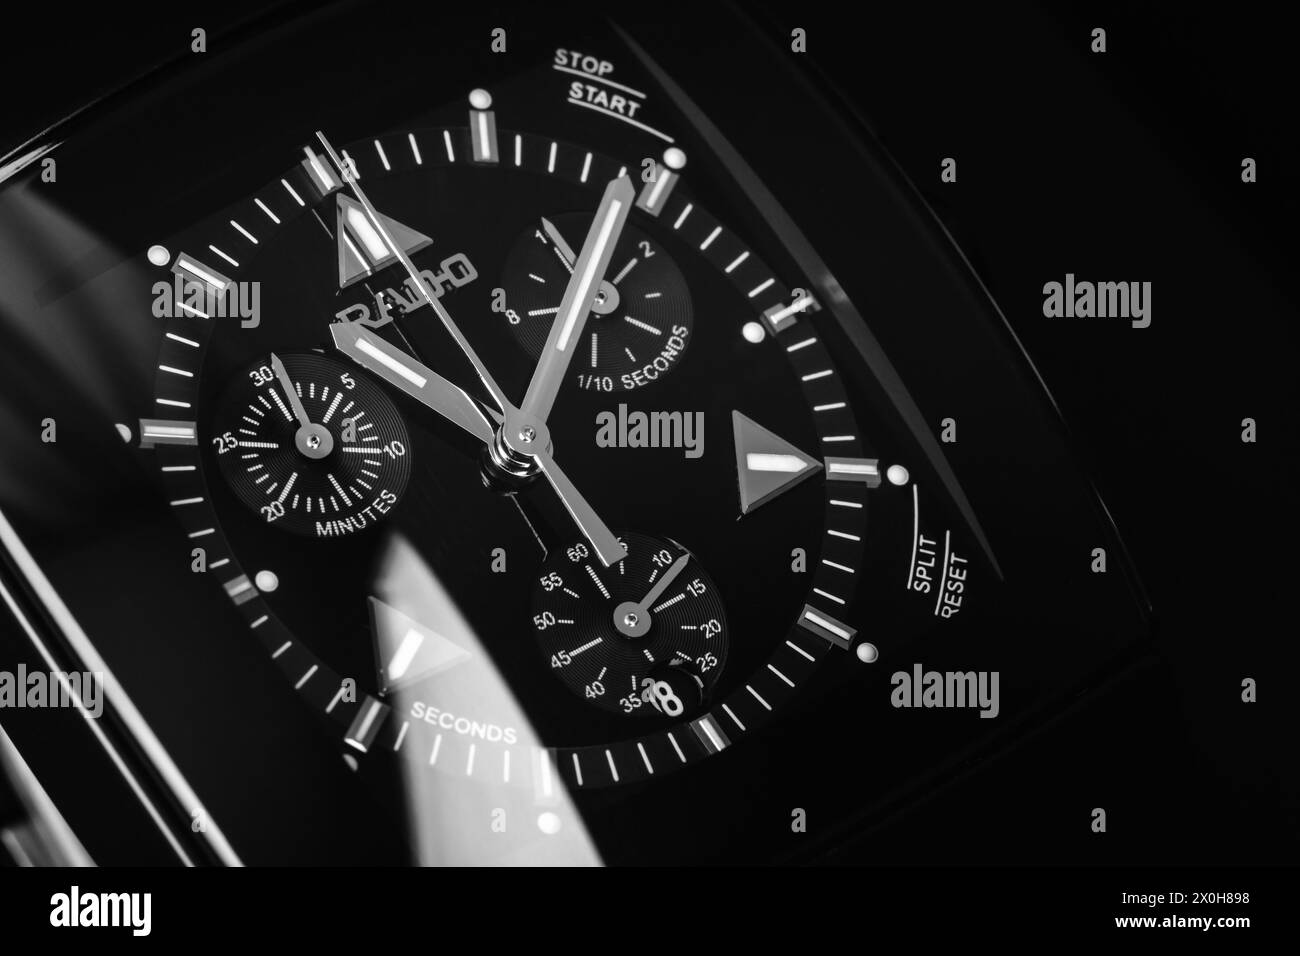 Lengnau, Suisse - 18 juin 2015 : Rado Sintra Chrono cadran avec chronomètre offres, Swiss made bracelet macro studio tourné sur fond noir Banque D'Images